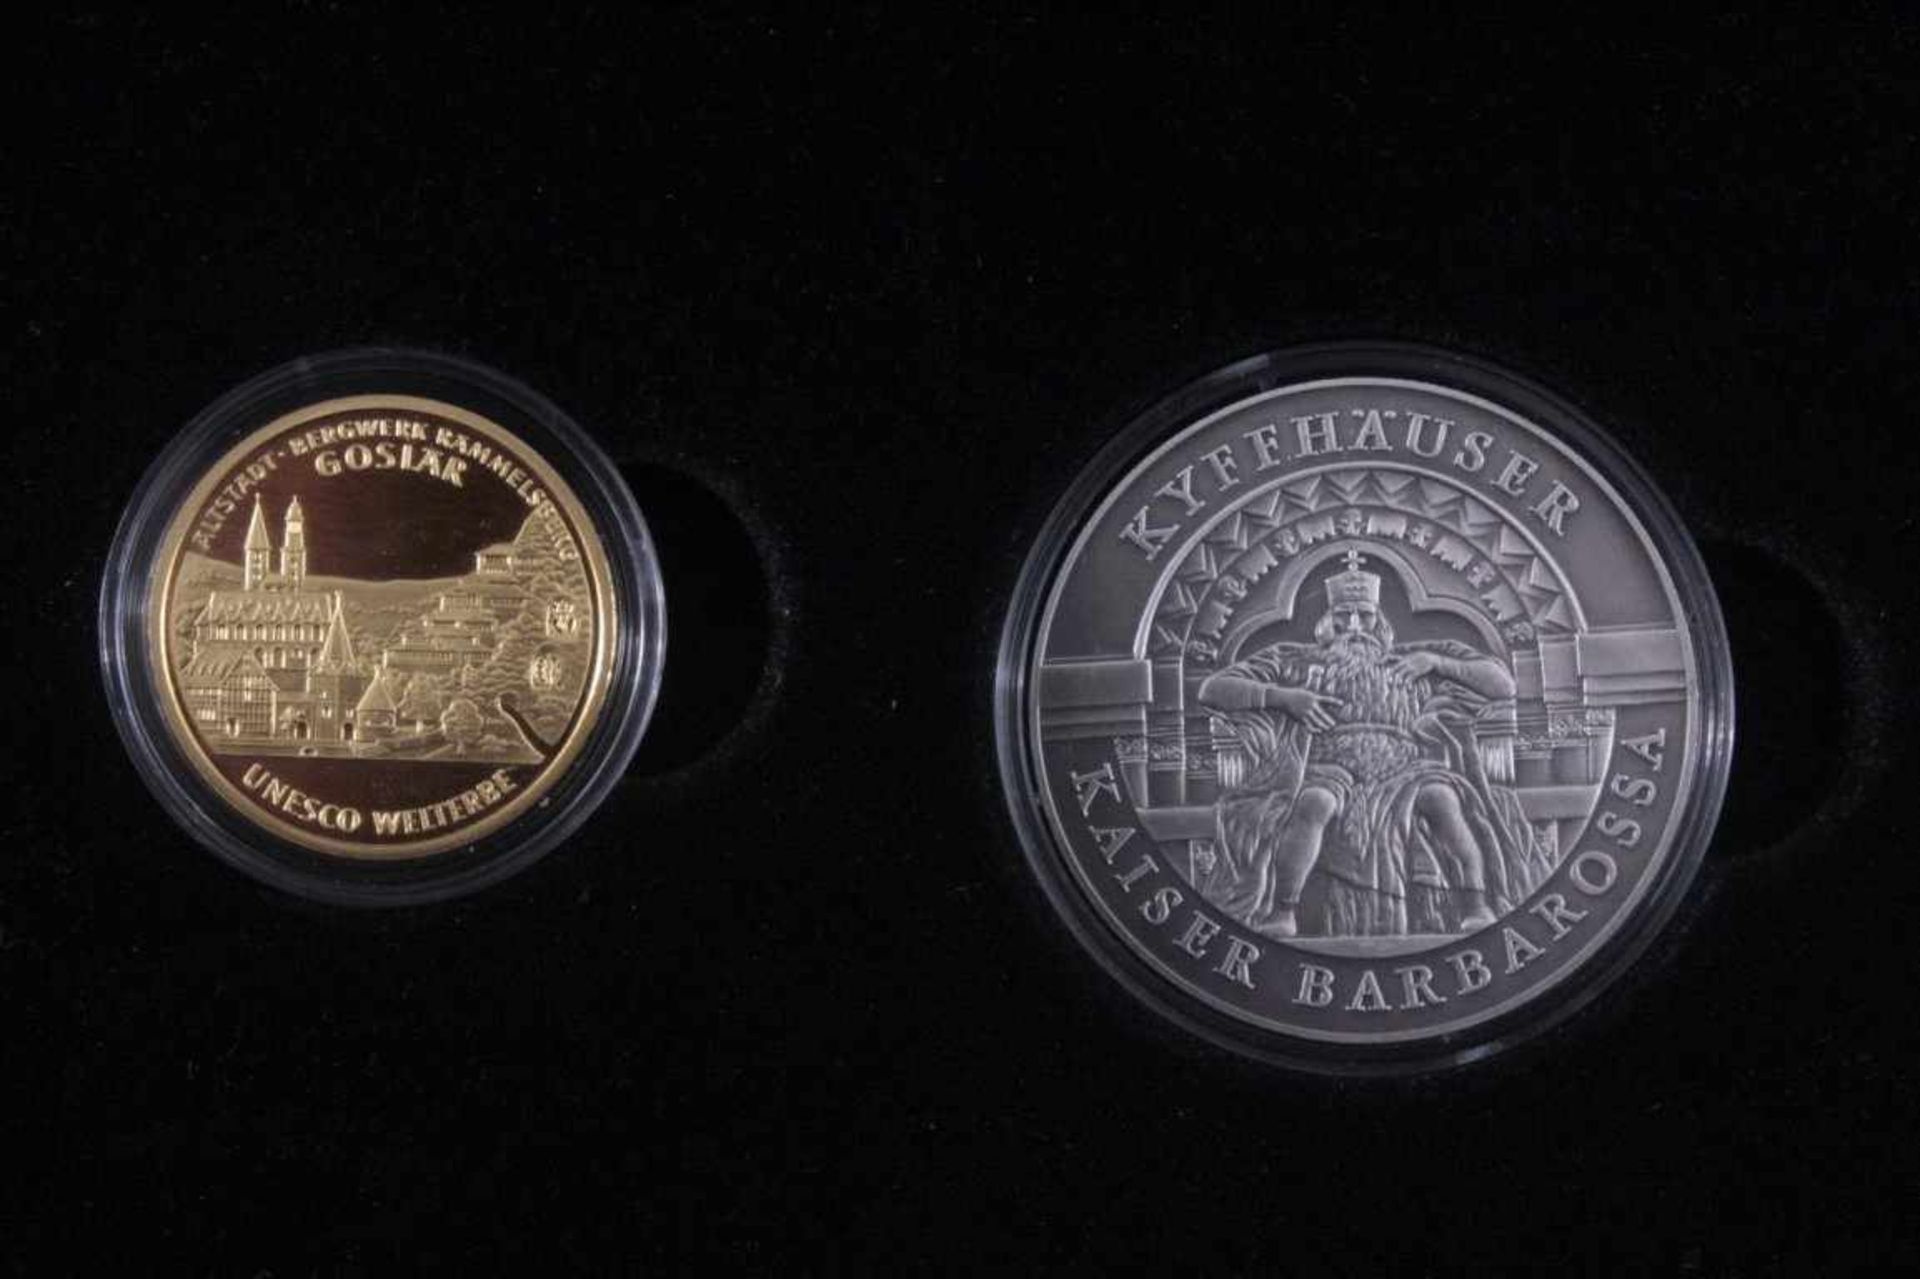 100 Euro Goldmünze Goslar 2008in Schatulle, nummerierte Variante mit Gedenkmedailleund Etui. - Bild 2 aus 4